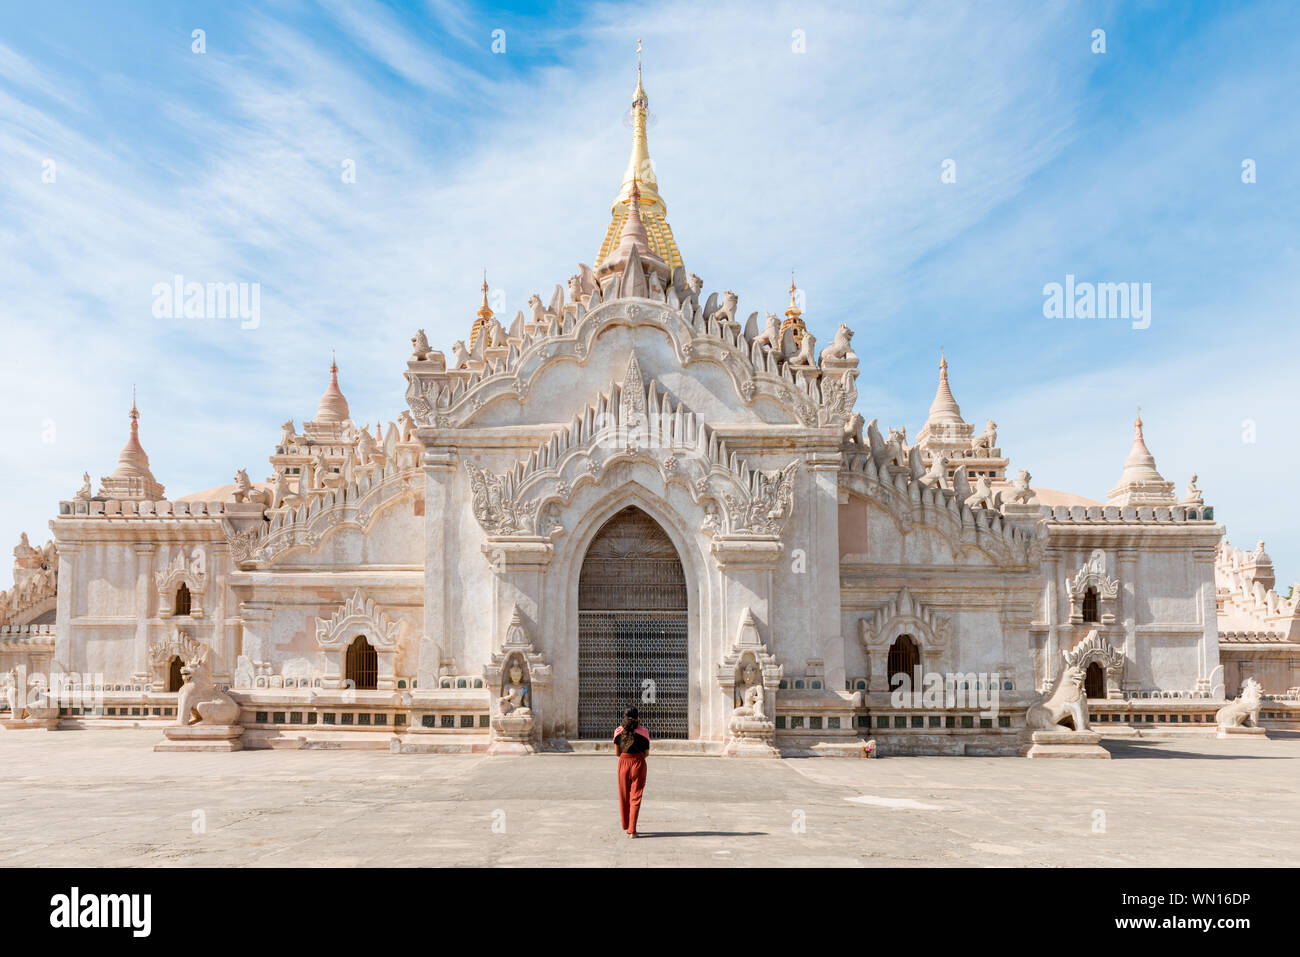 Immagine orizzontale di brunette donna che guarda il grande tempio di Ananda, un famoso tempio buddista di Bagan, Myanmar Foto Stock